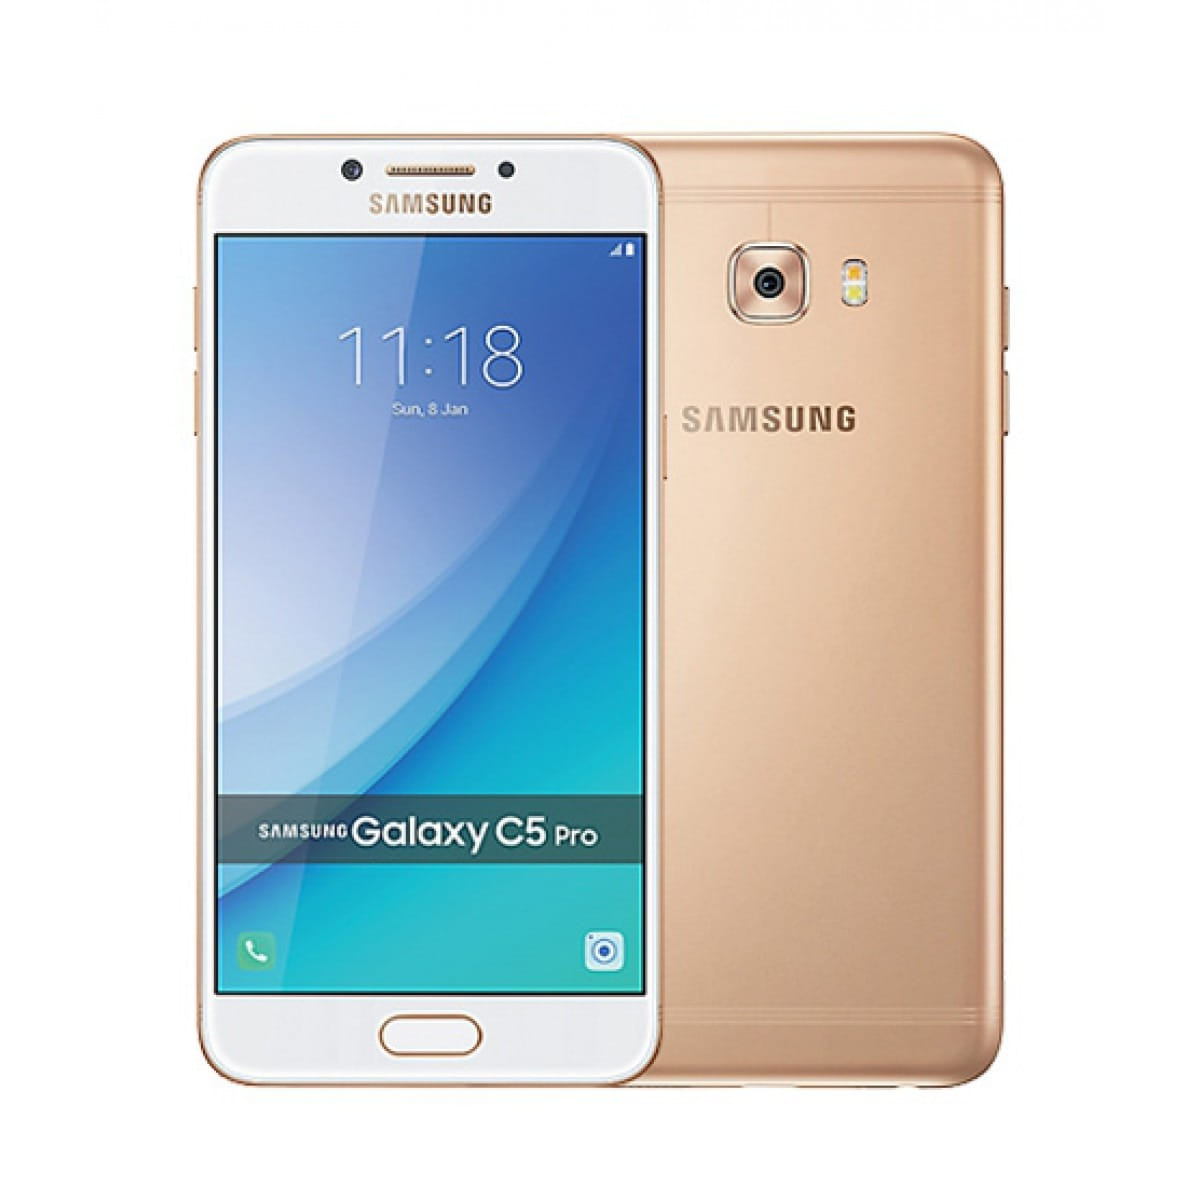 Samsung Galaxy C5: Metall-Smartphone vorab auf offiziellen Bildern